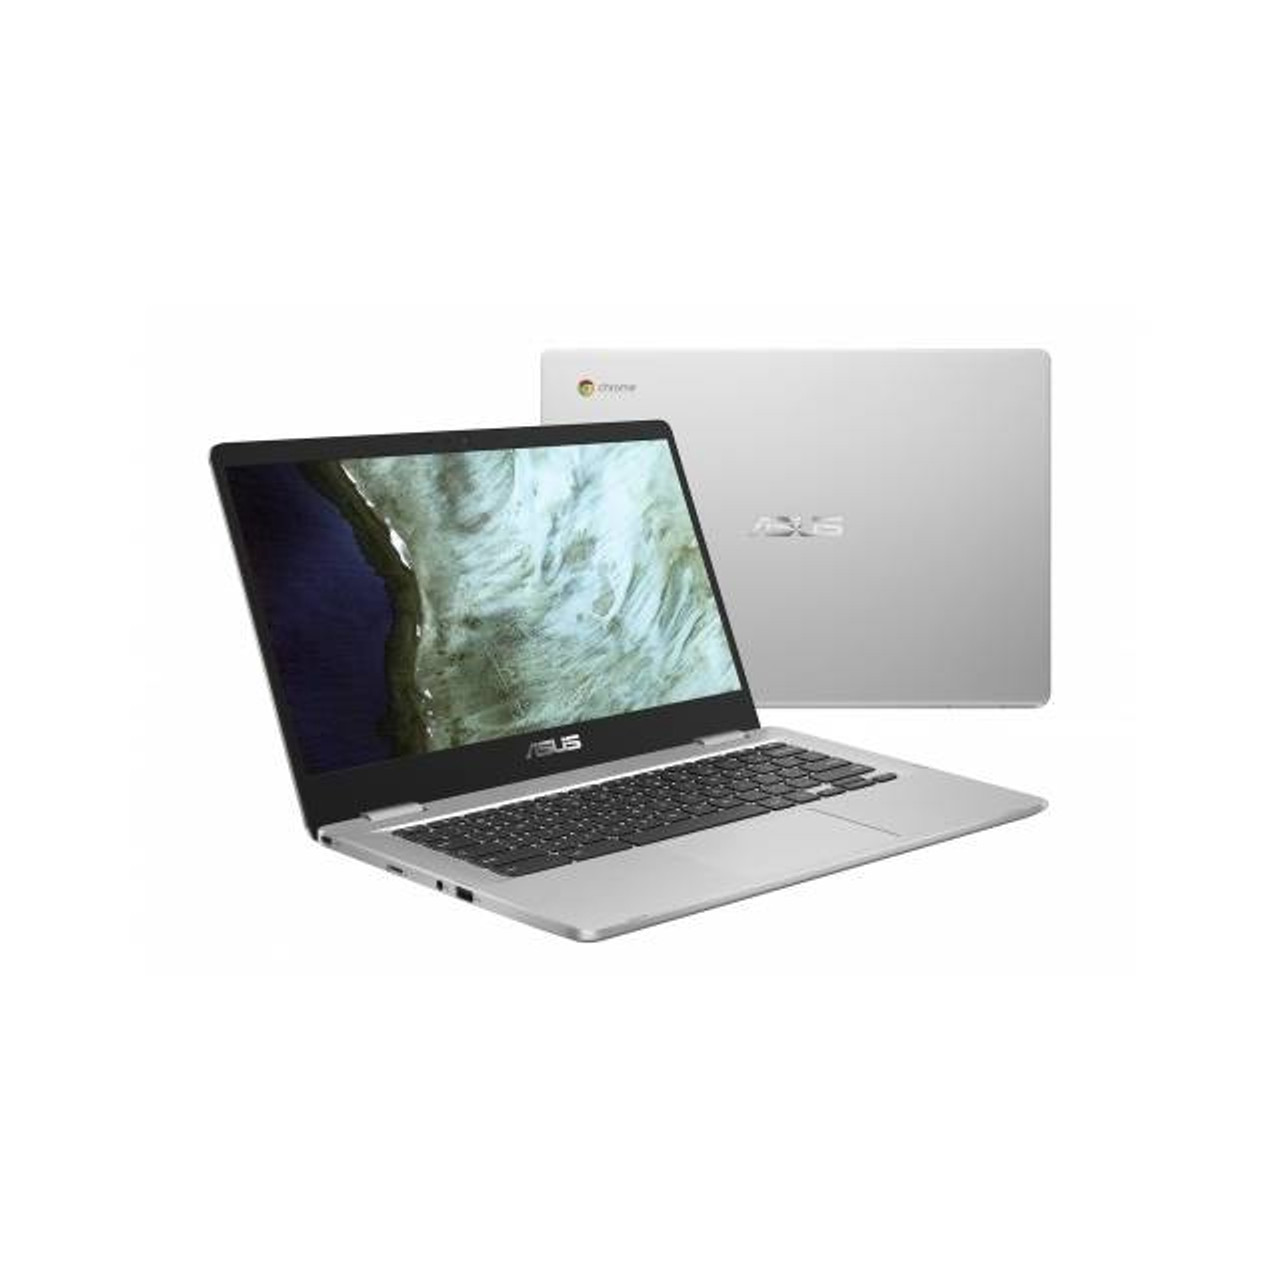 ASUS Chromebook C423NA-DH02 14 inch Intel Celeron N3350 1.1GHz/ 4GB LPDDR4/ 32GB eMMC/ USB3.1/ Chrome